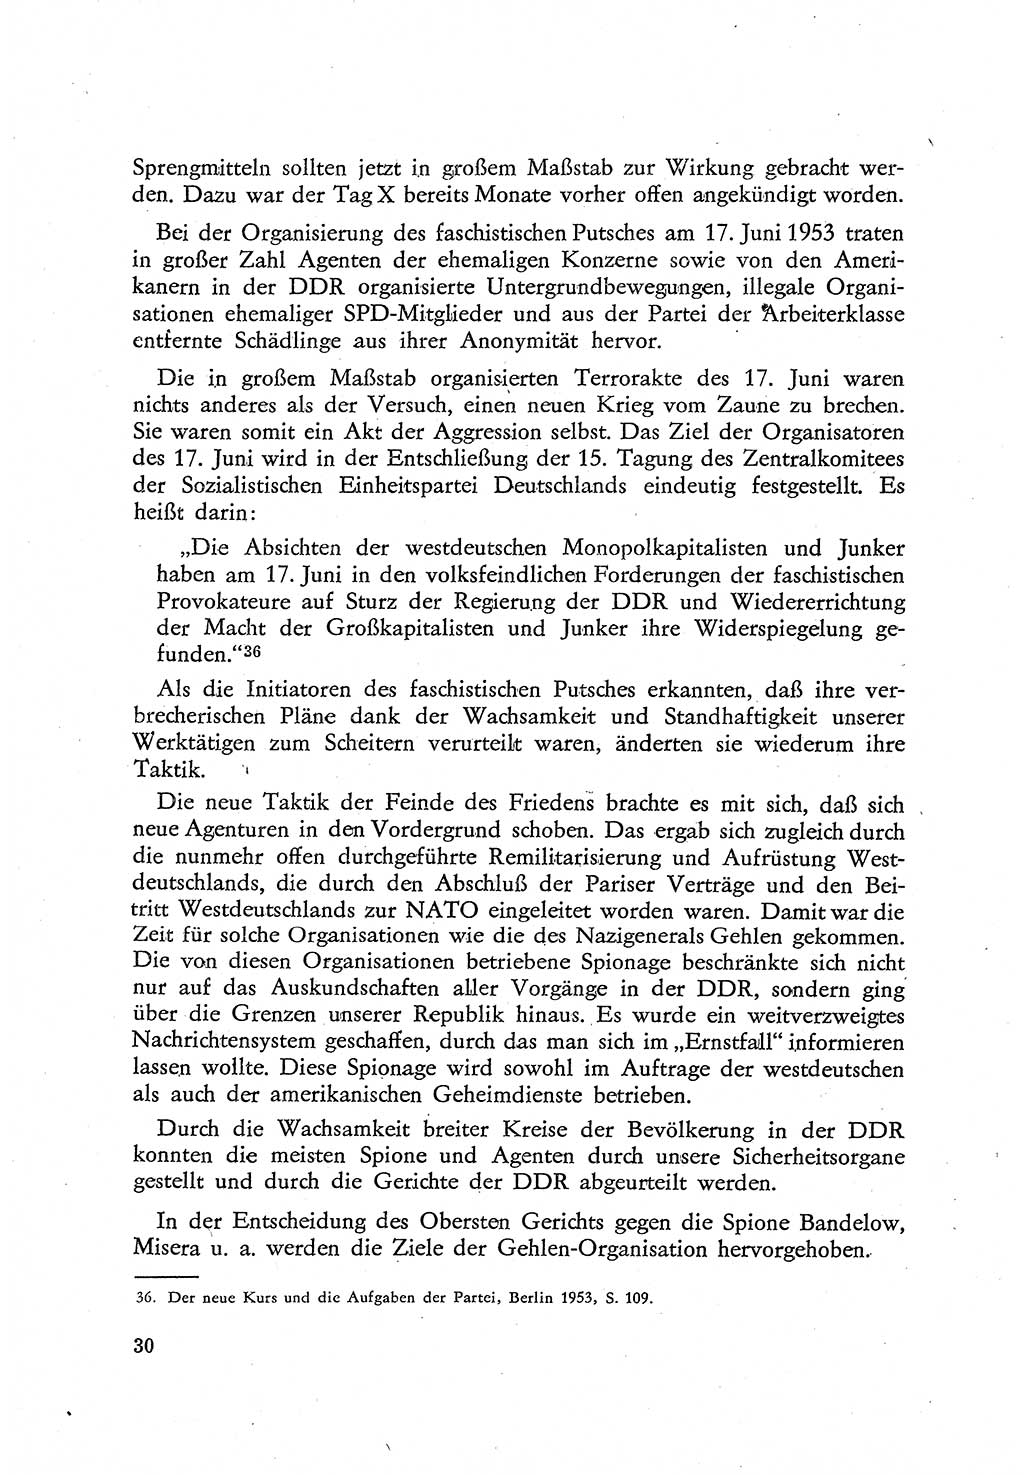 Beiträge zum Strafrecht [Deutsche Demokratische Republik (DDR)], Staatsverbrechen 1959, Seite 30 (Beitr. Strafr. DDR St.-Verbr. 1959, S. 30)